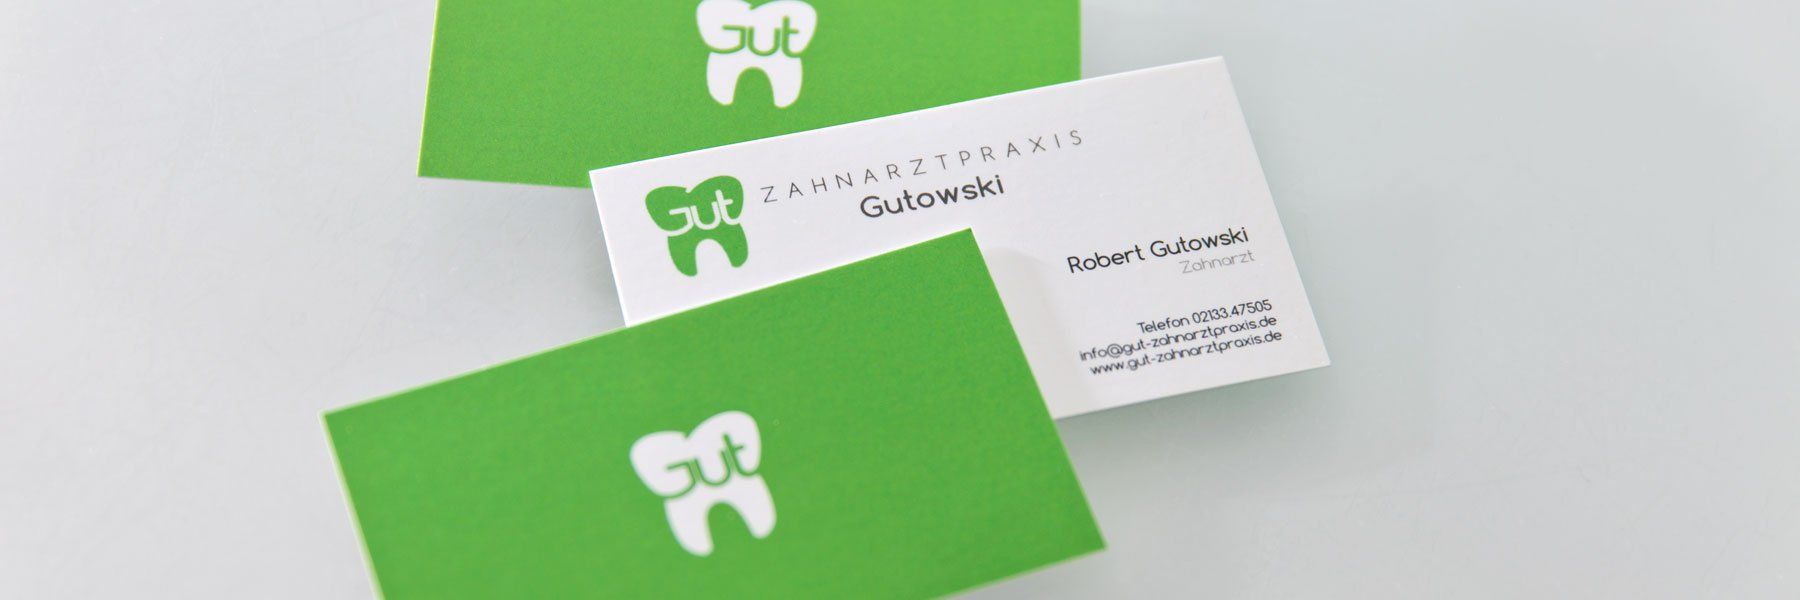 Zahnarztpraxis Robert Gutowski – Visitenkarten